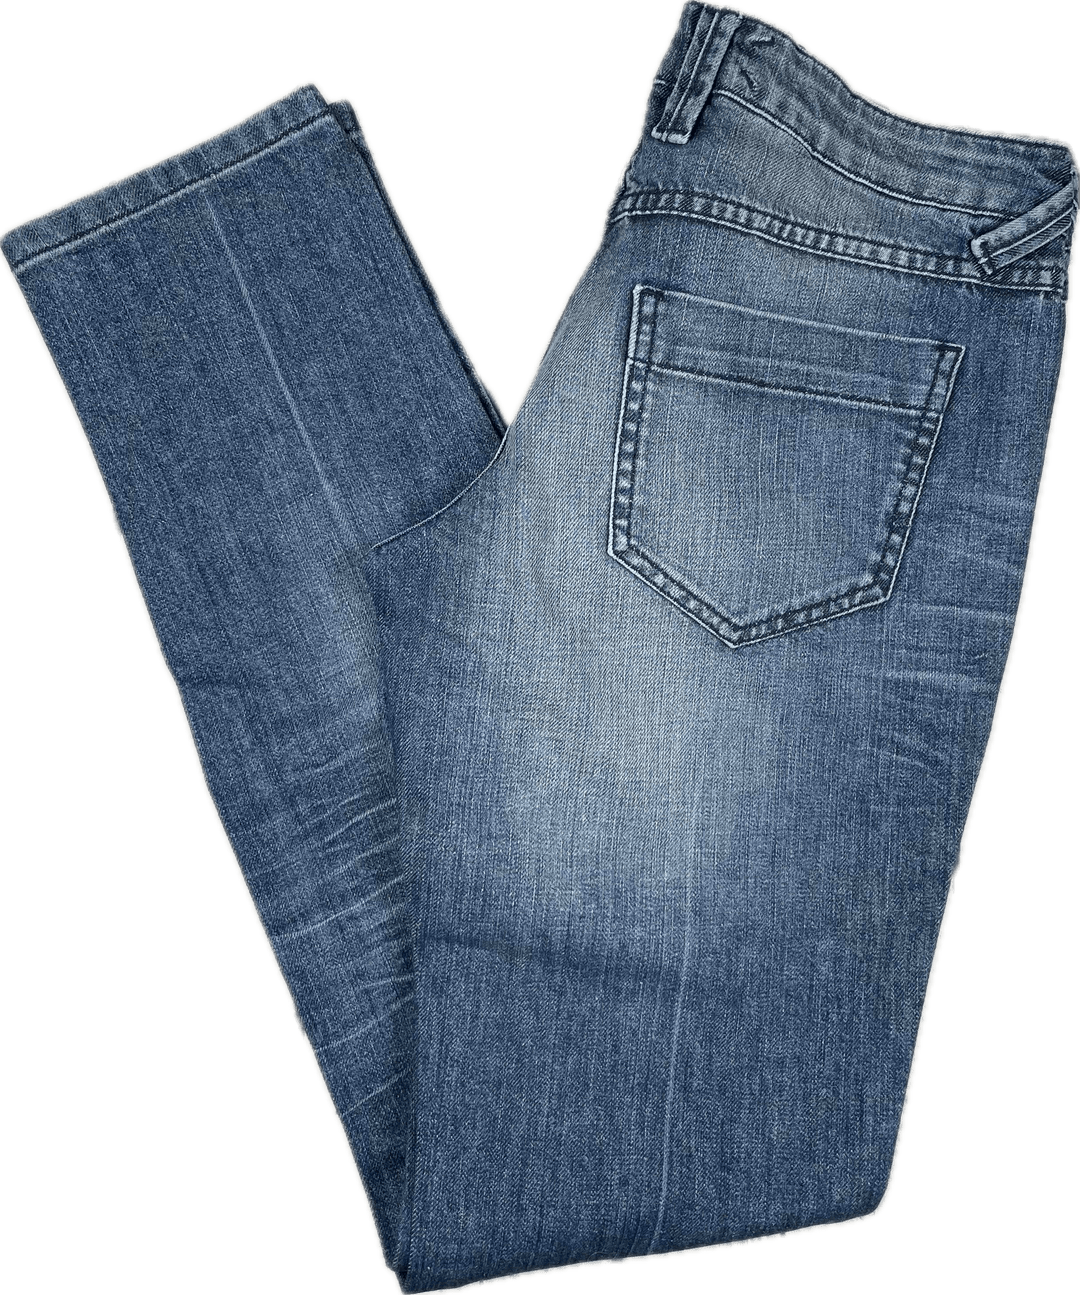 NWT- John Richmond Distressed Slim fit Jeans- Size 27 - Jean Pool